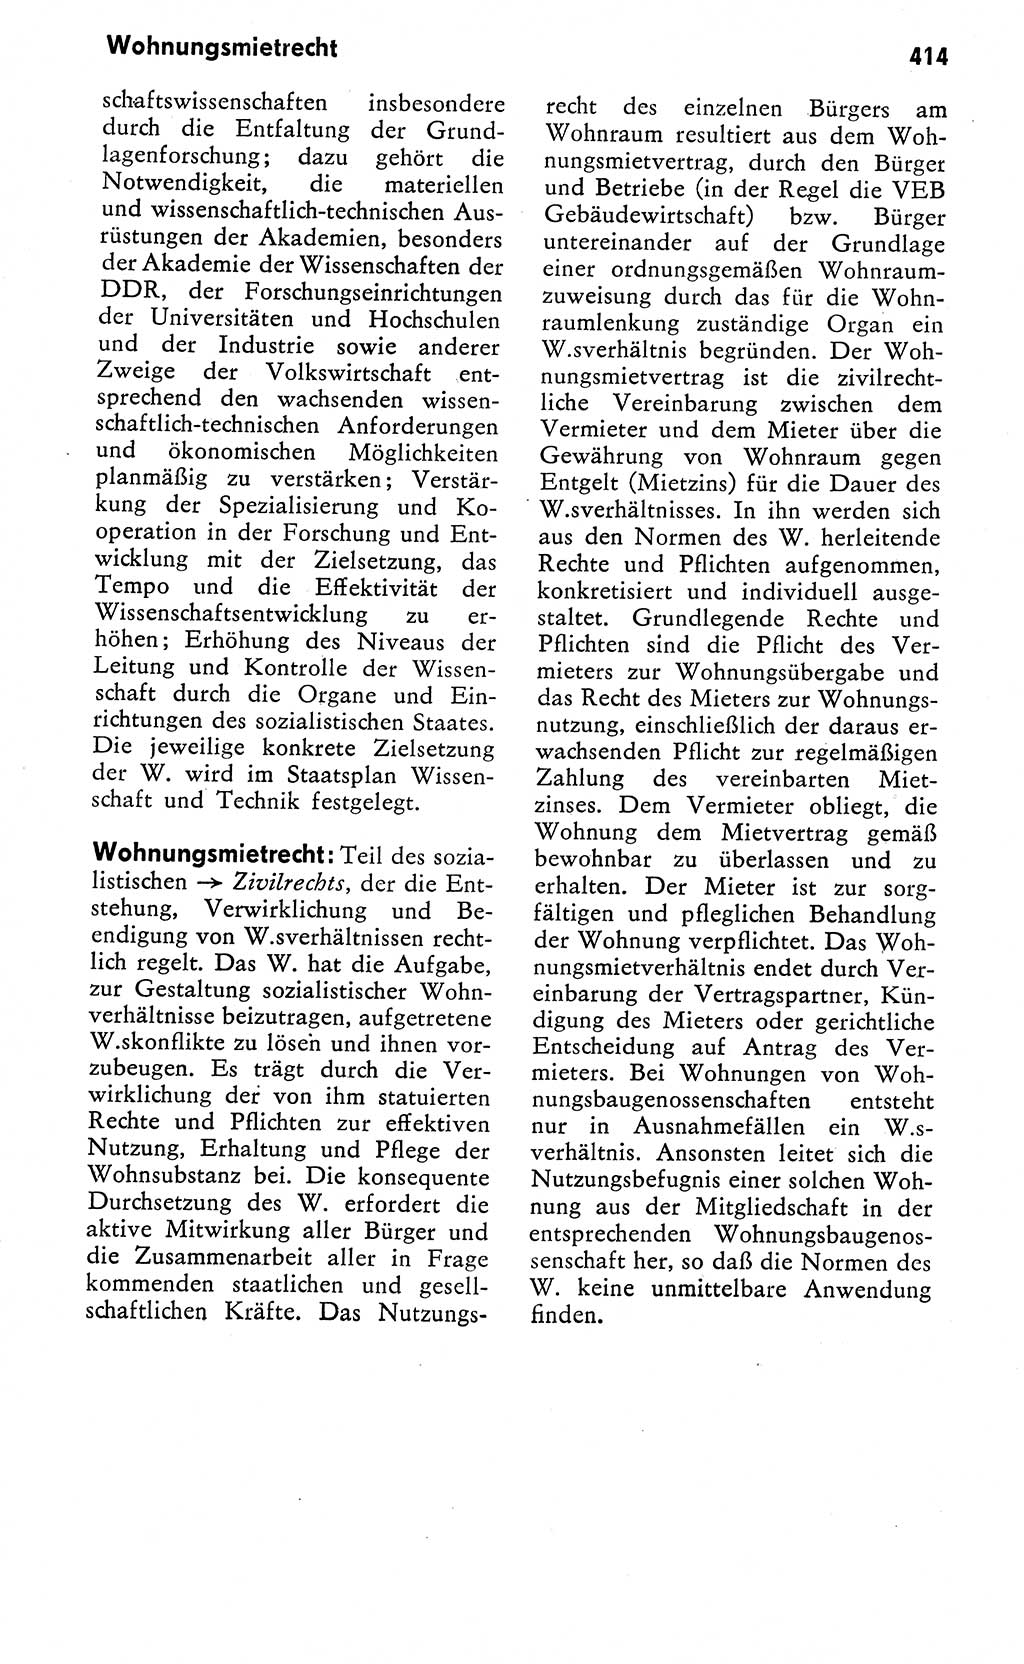 Wörterbuch zum sozialistischen Staat [Deutsche Demokratische Republik (DDR)] 1974, Seite 414 (Wb. soz. St. DDR 1974, S. 414)